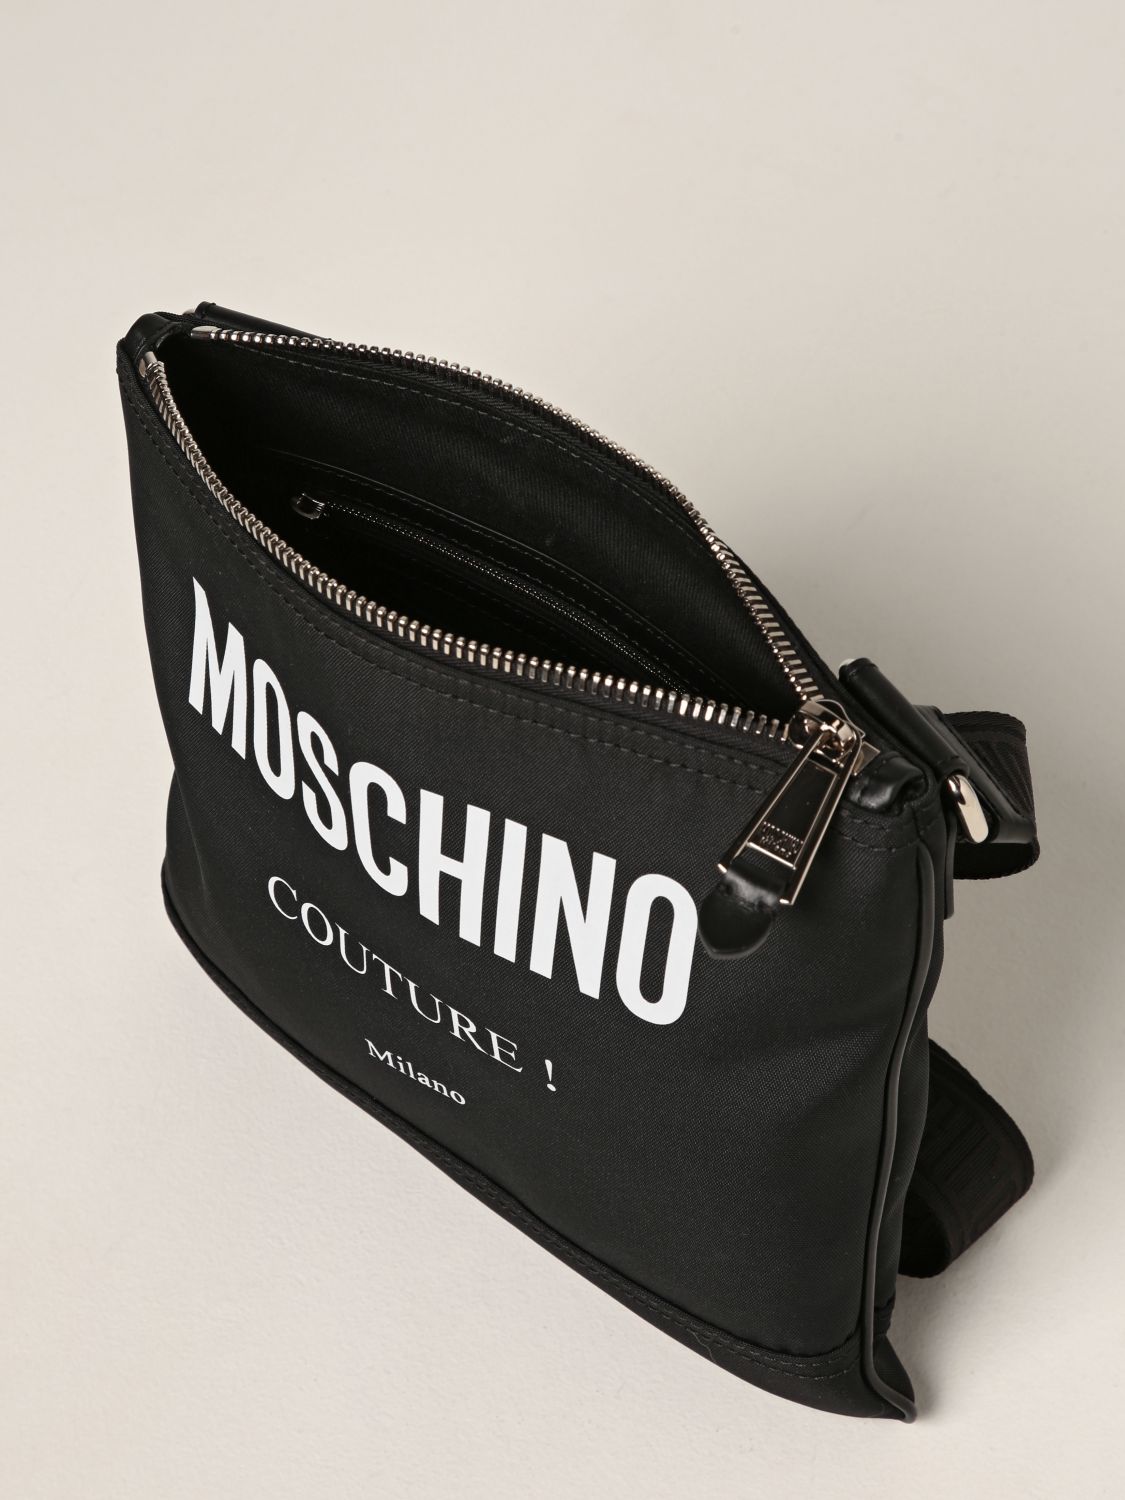 Umhängetasche Moschino Couture: Tasche herren Moschino Couture schwarz 4